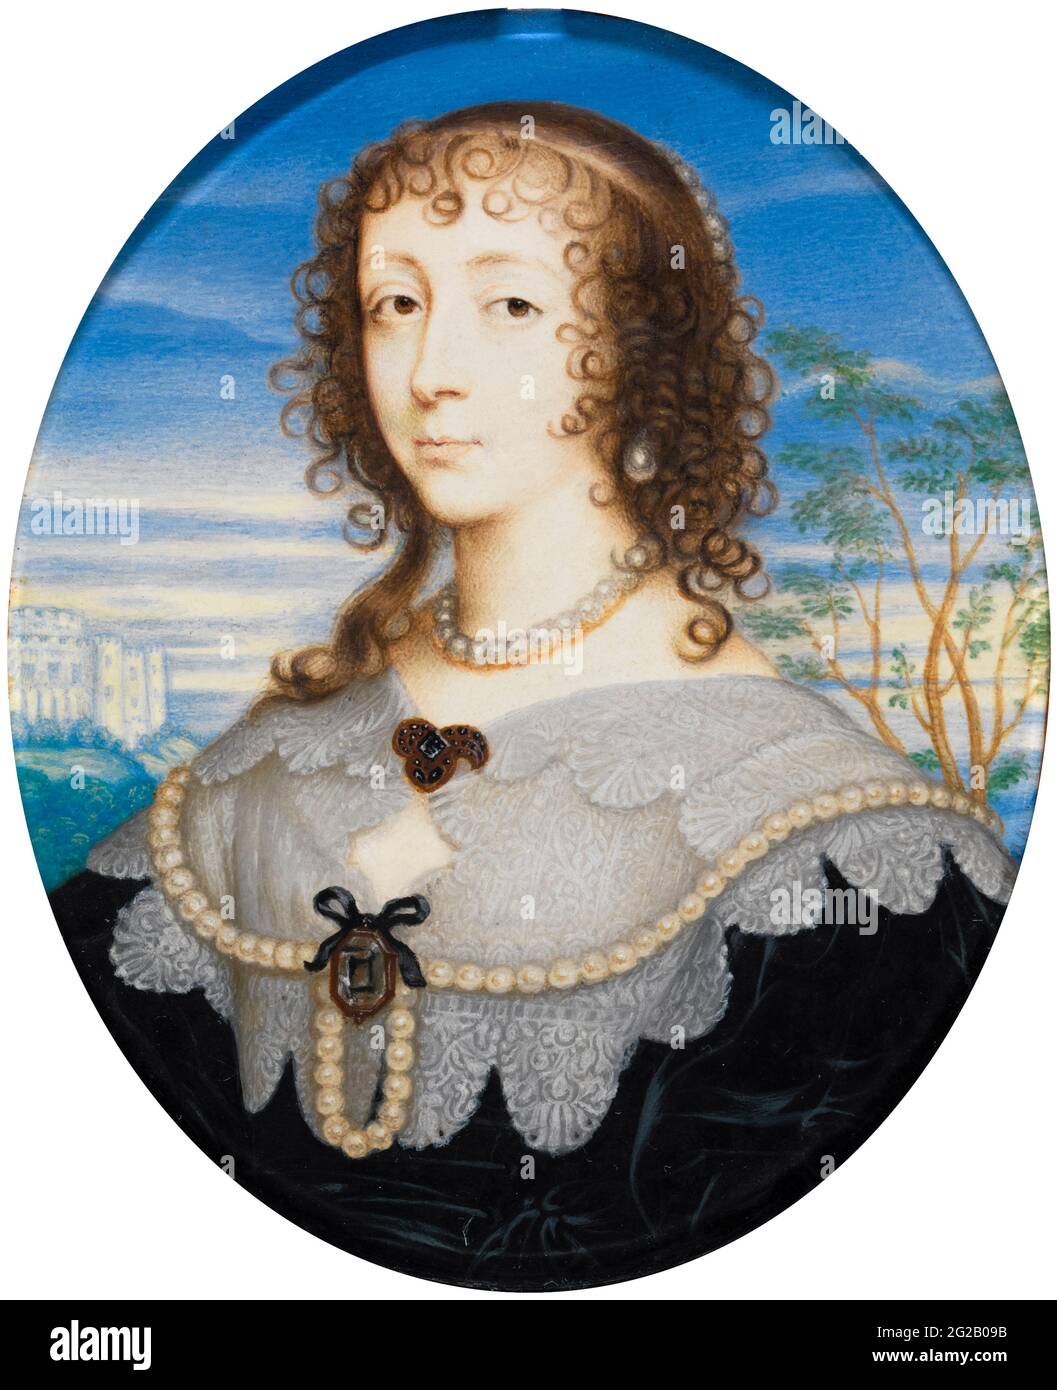 Königin Henrietta Maria (1609-1669), Gemahlin und Ehefrau von Karl I. von England, Schottland und Irland, Porträt Miniatur von David des Granges nach Sir Anthony Van Dyck, Gemälde nach 1636 Stockfoto